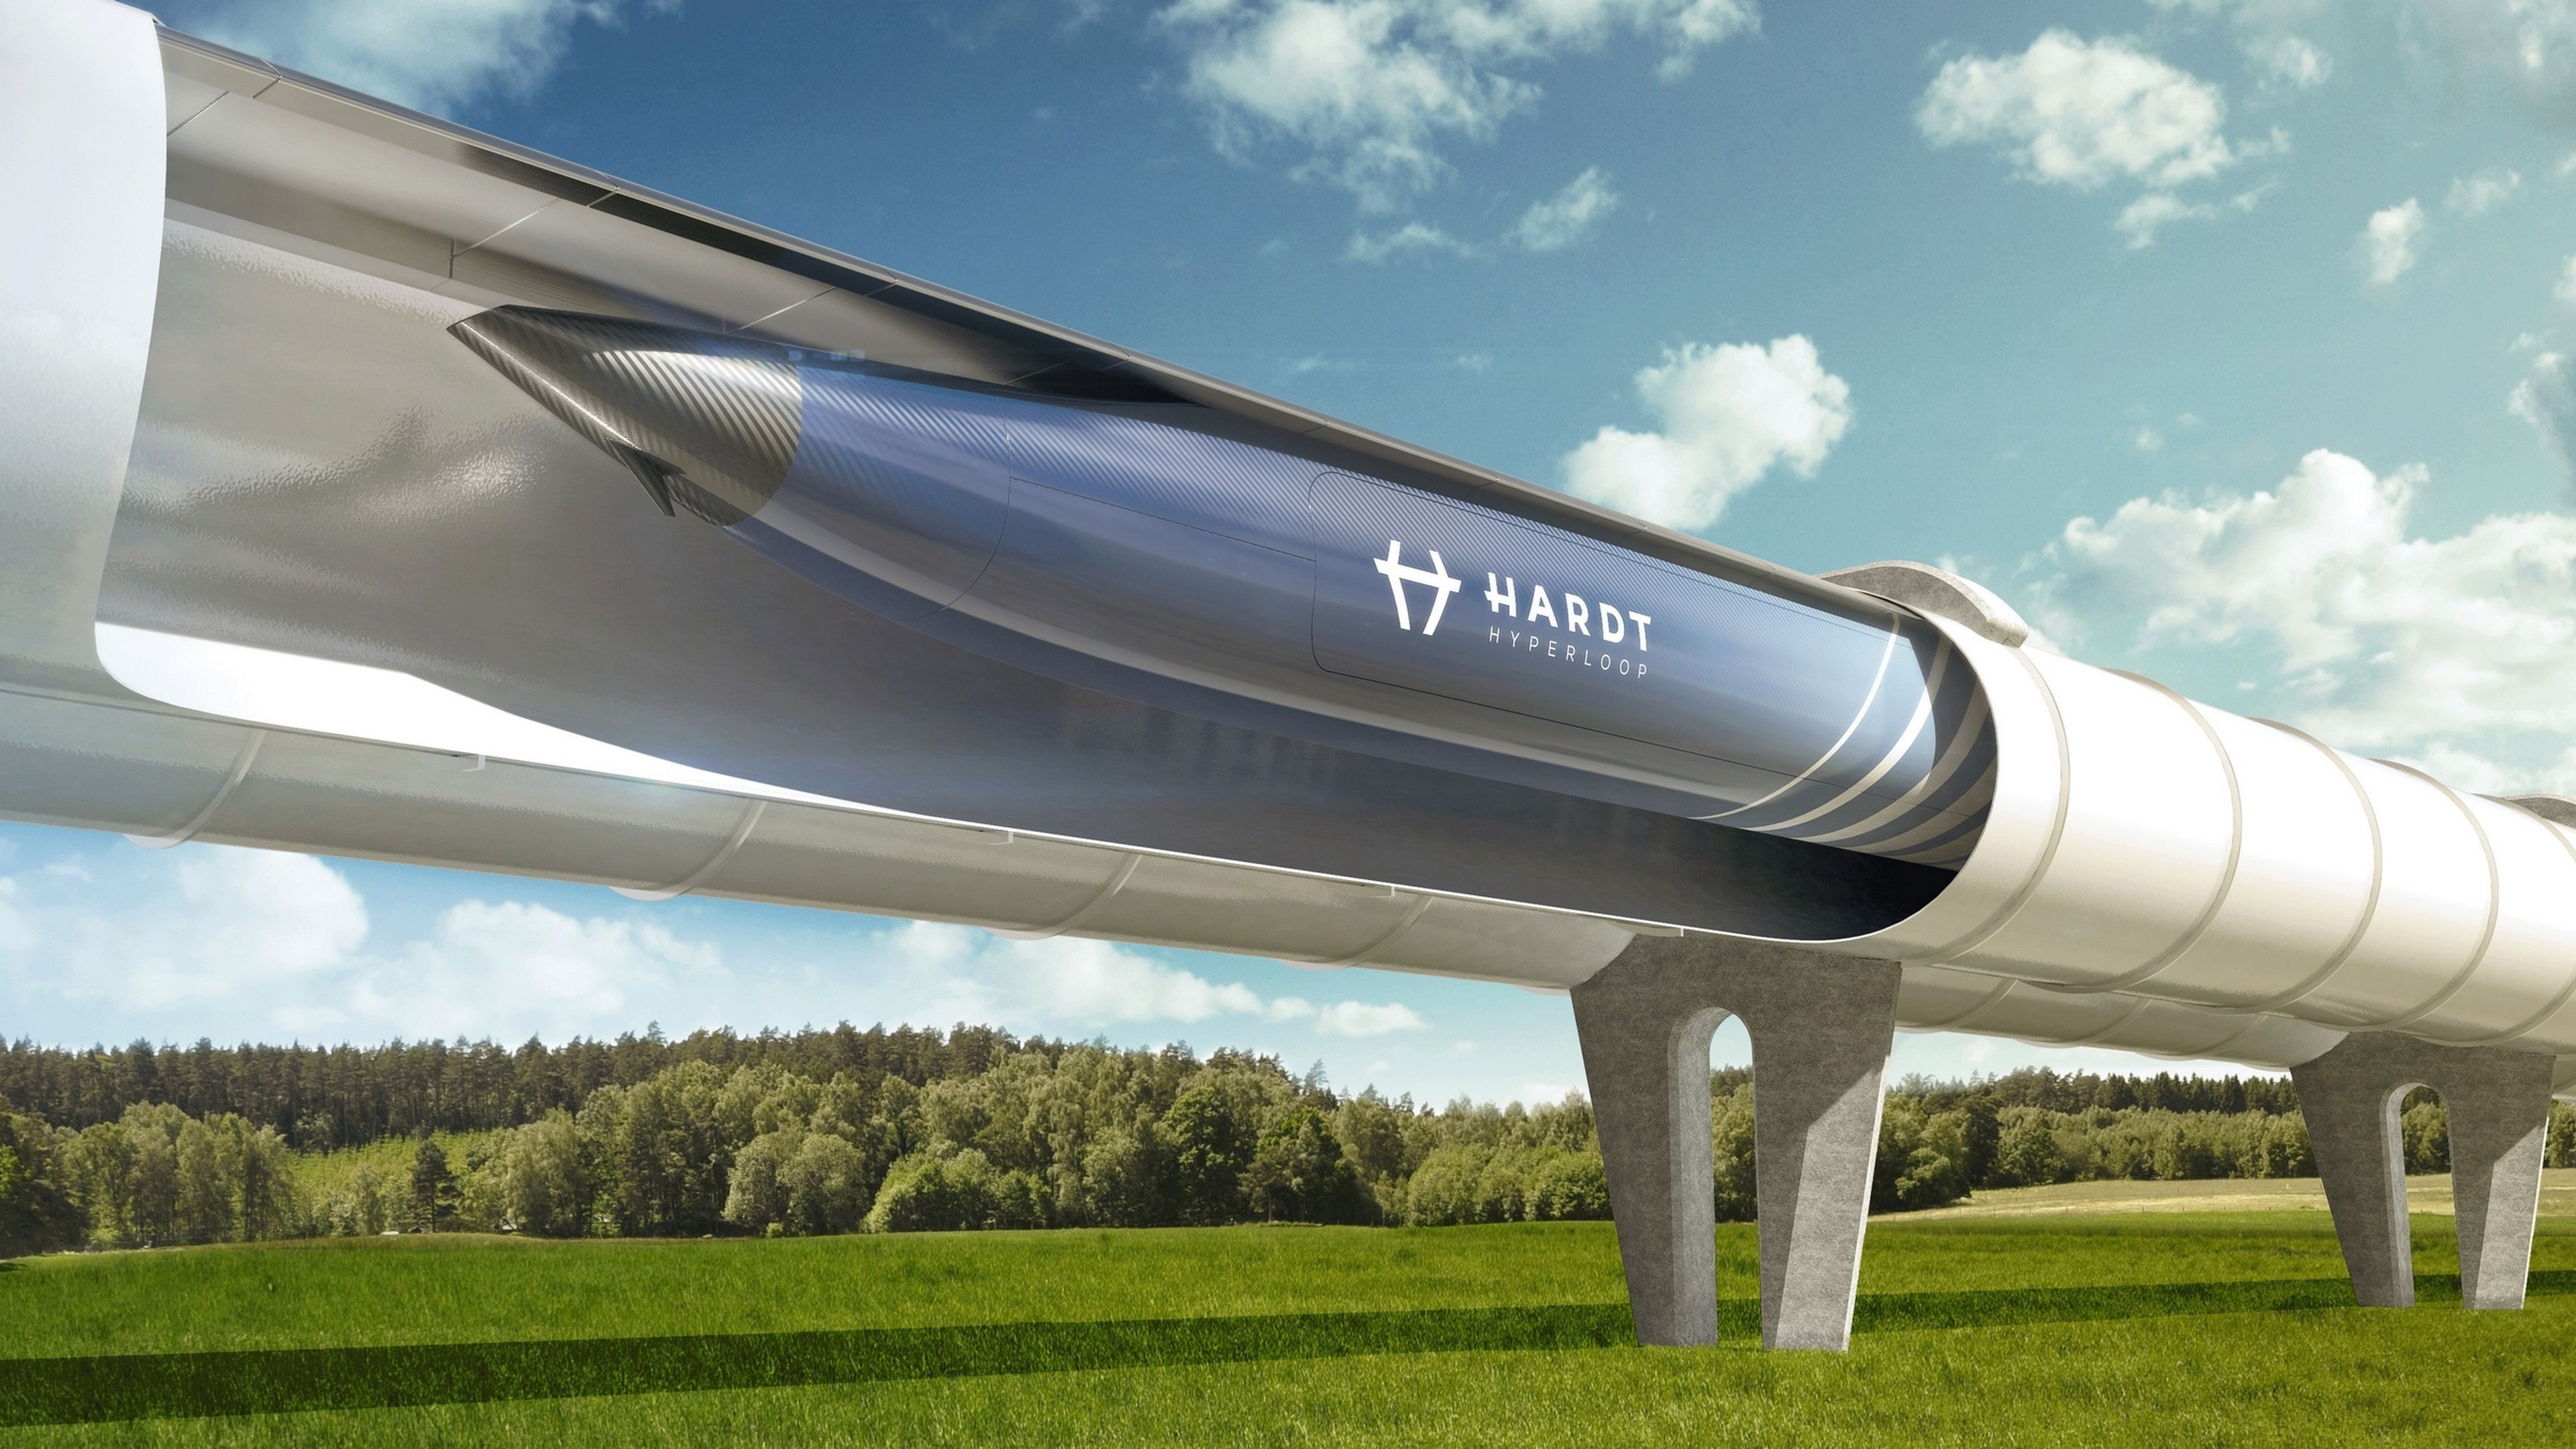 Elon Musk's Hyperloop will arrive in Spain through Zaragoza